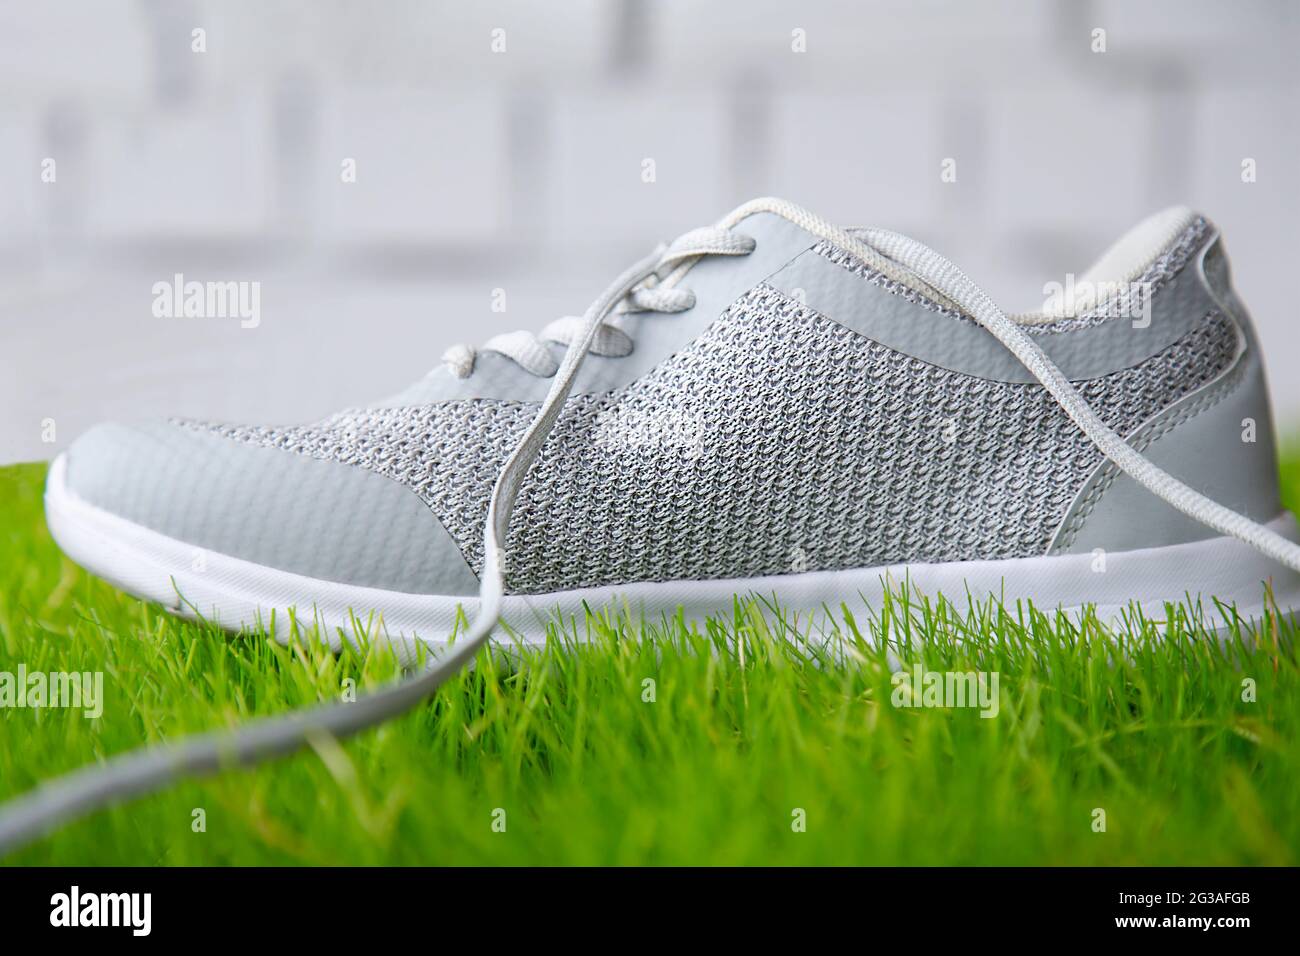 Chaussures de sport sur l'herbe contre un mur de briques. Chaussures de sport sur le terrain de sport en gazon. Banque D'Images